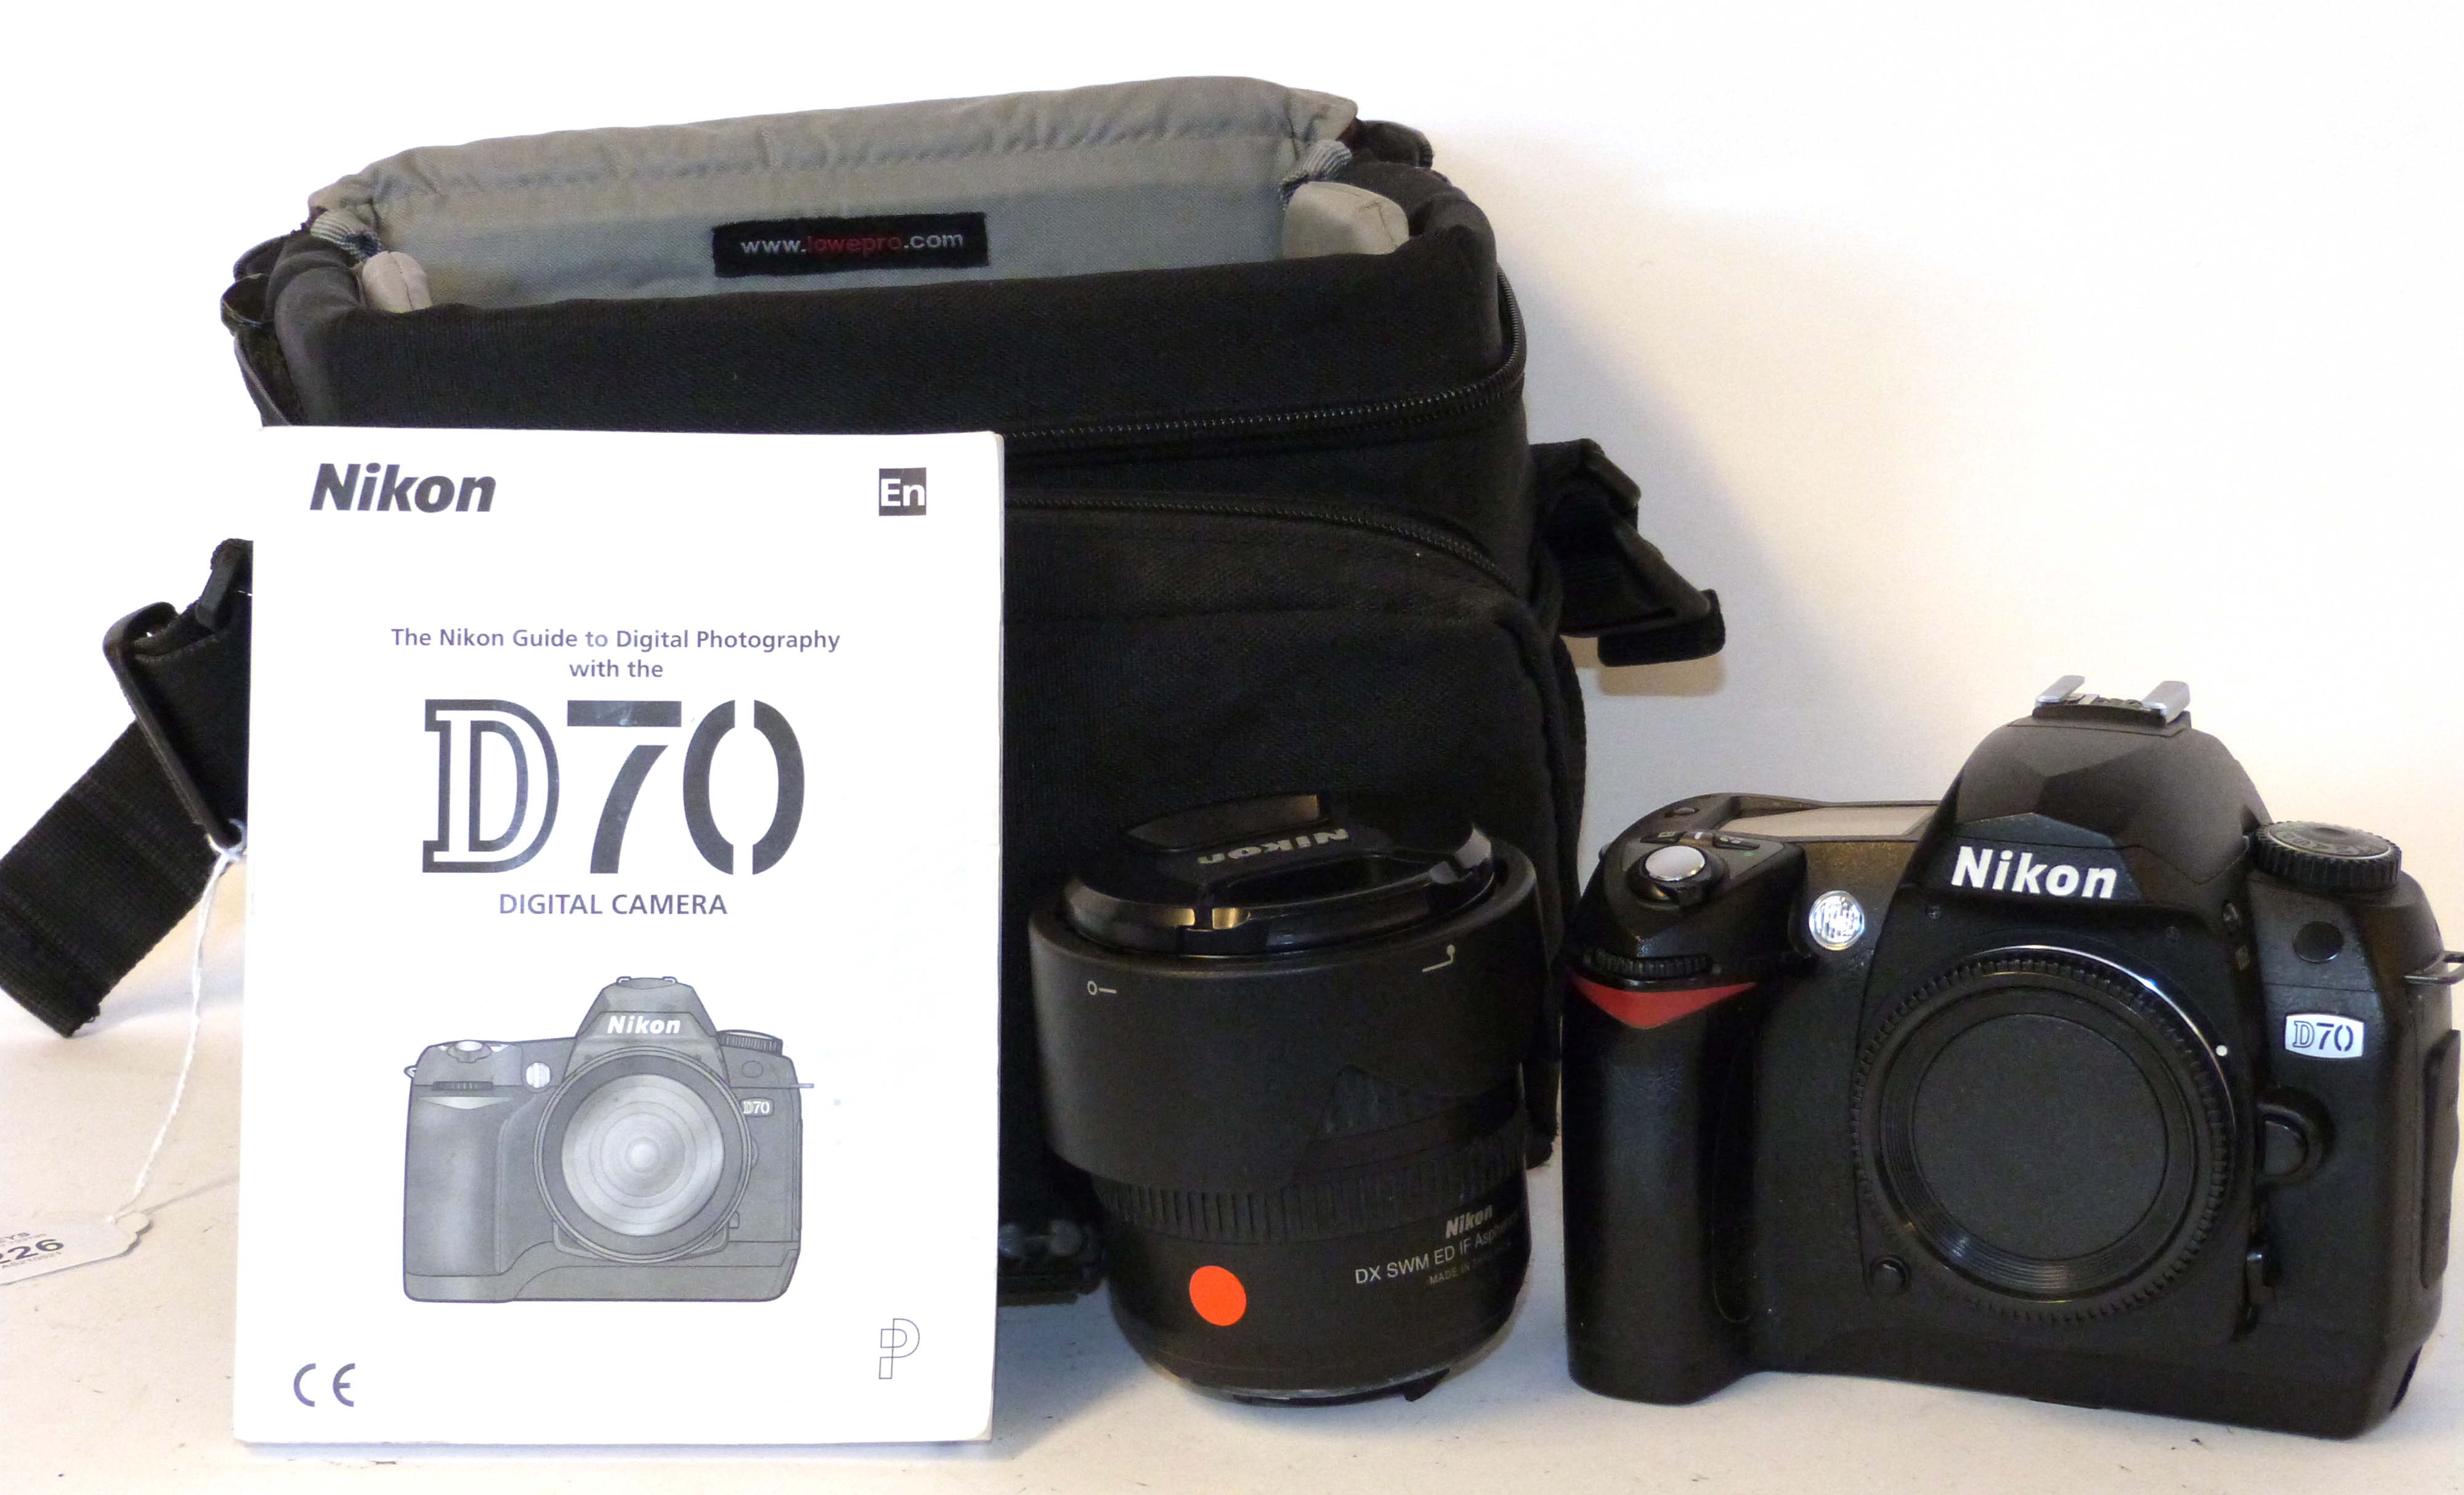 Nikon D70 digital camera together with Nikon AF-S Nikkor 18-70mm lens, charger and fitted case